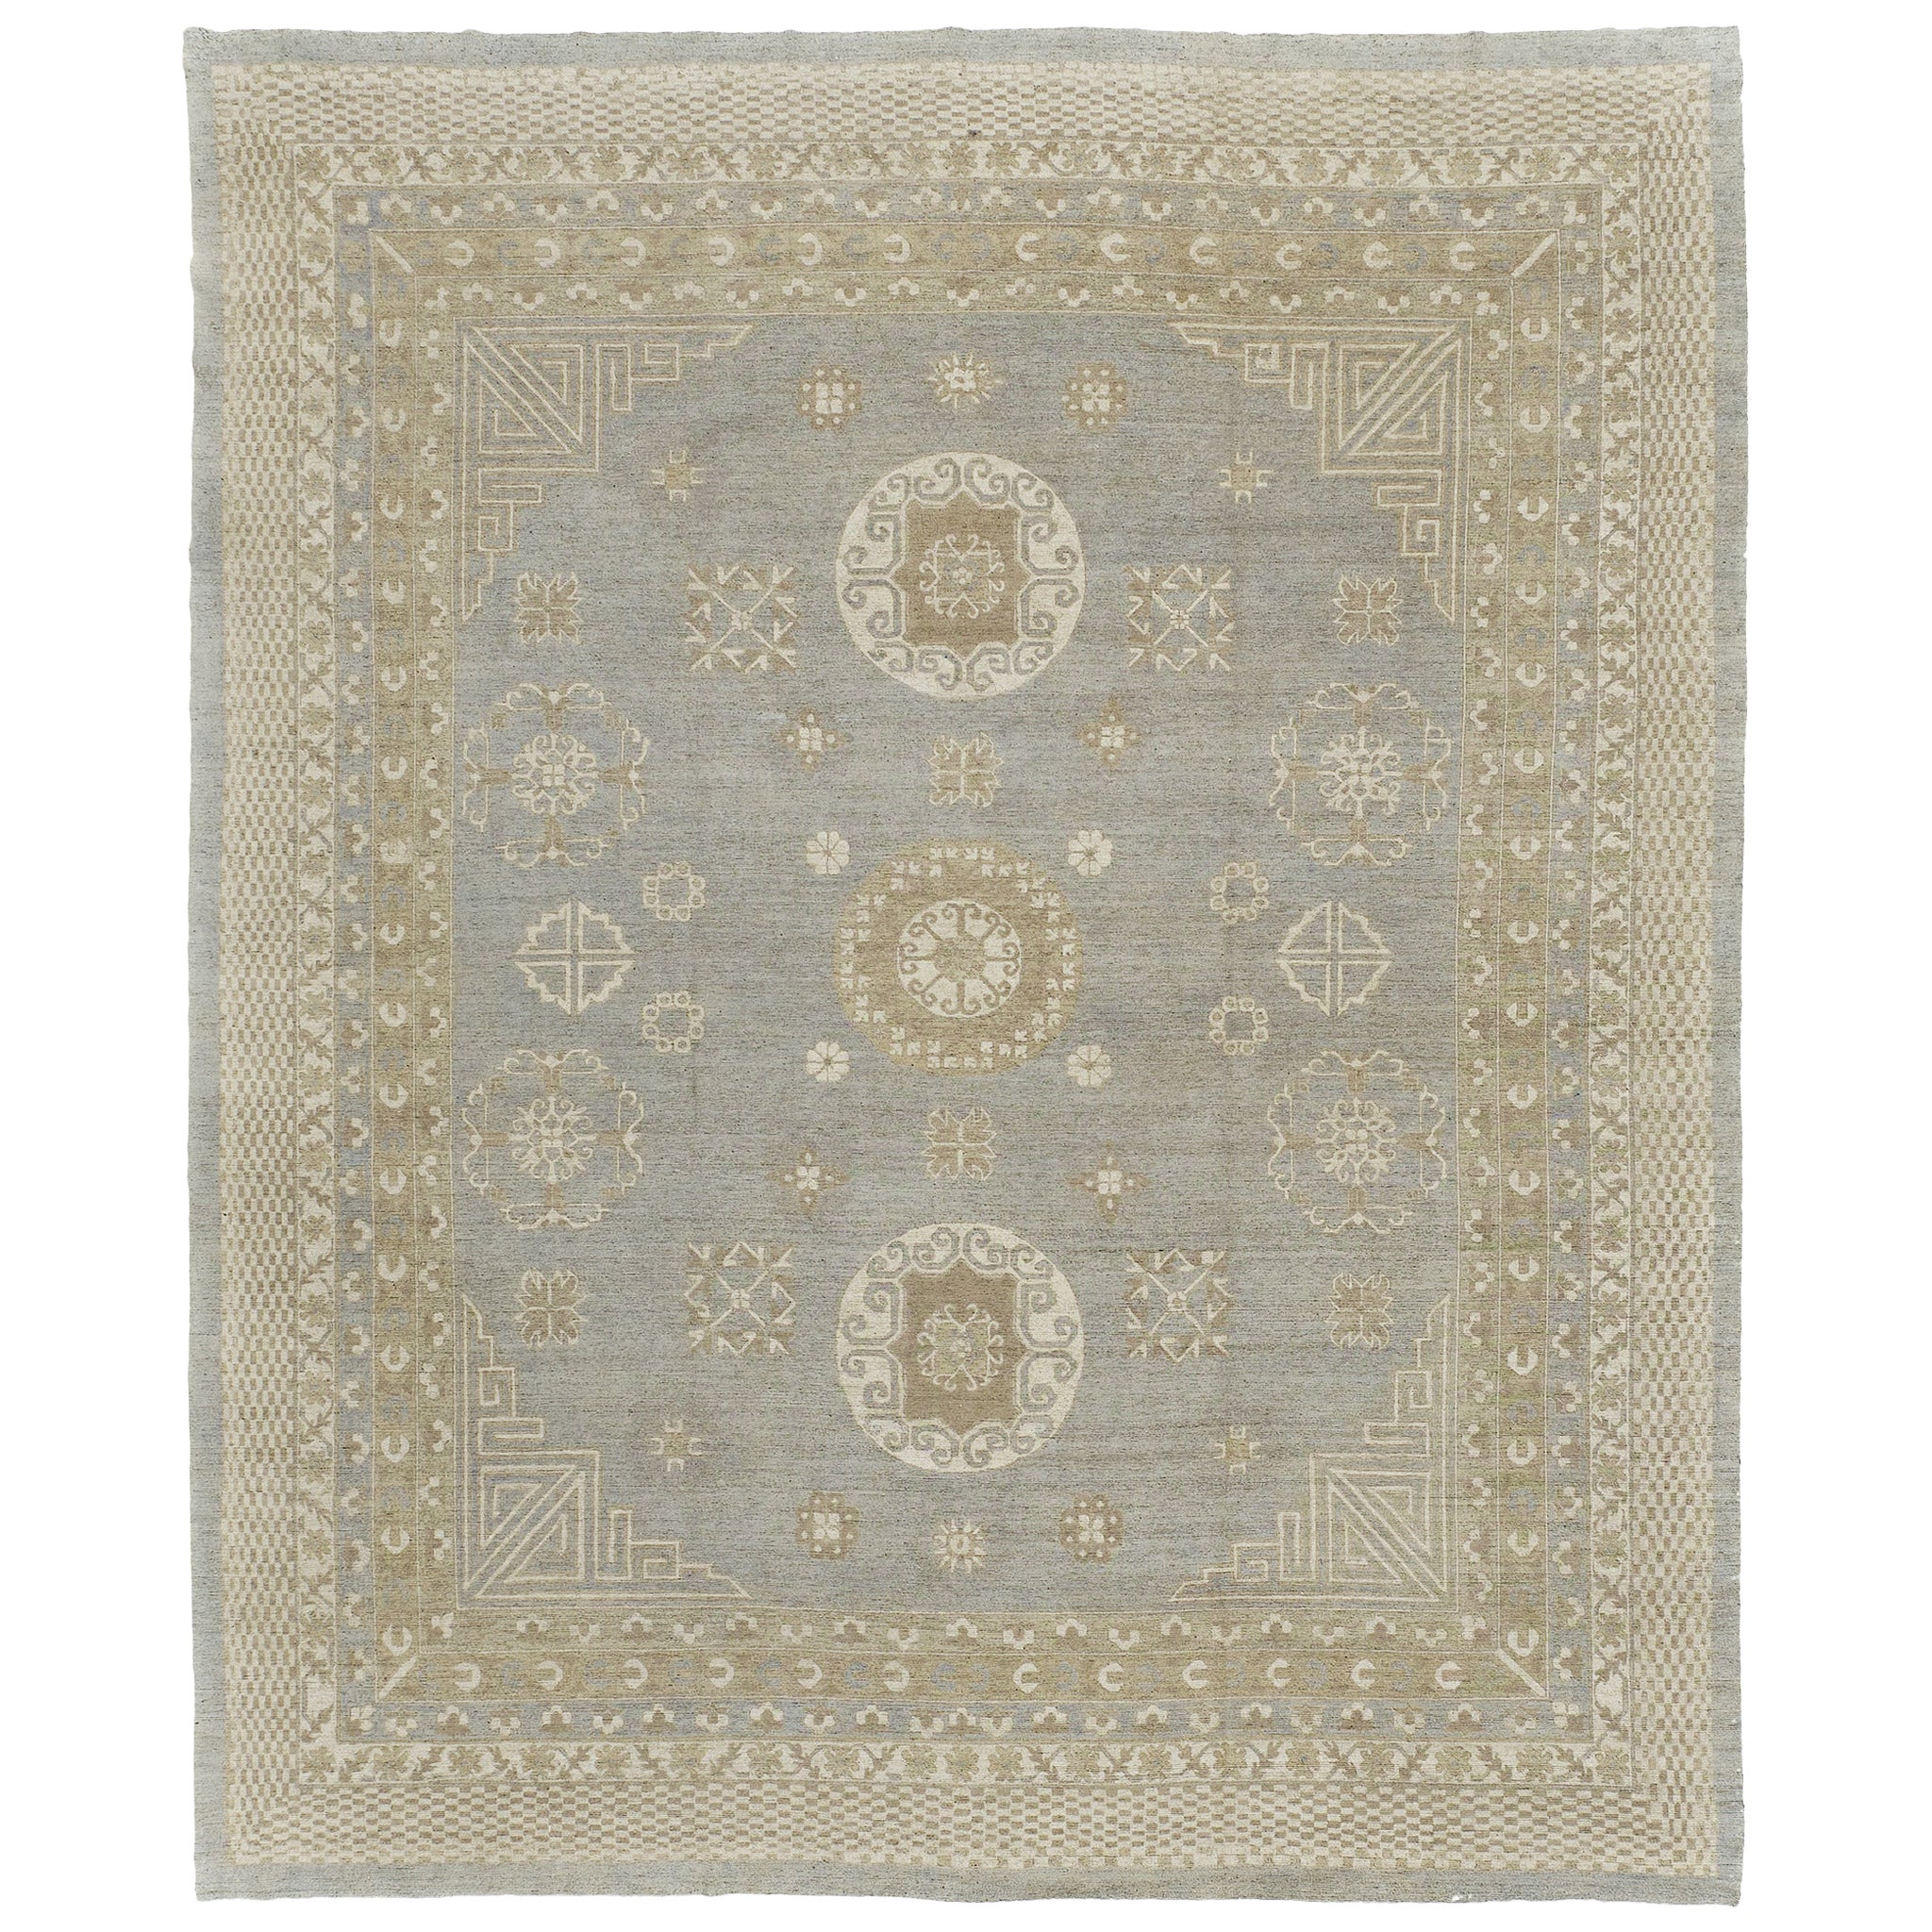 Khotan-Revival-Teppich im Vintage-Stil des 18. Jahrhunderts D5387